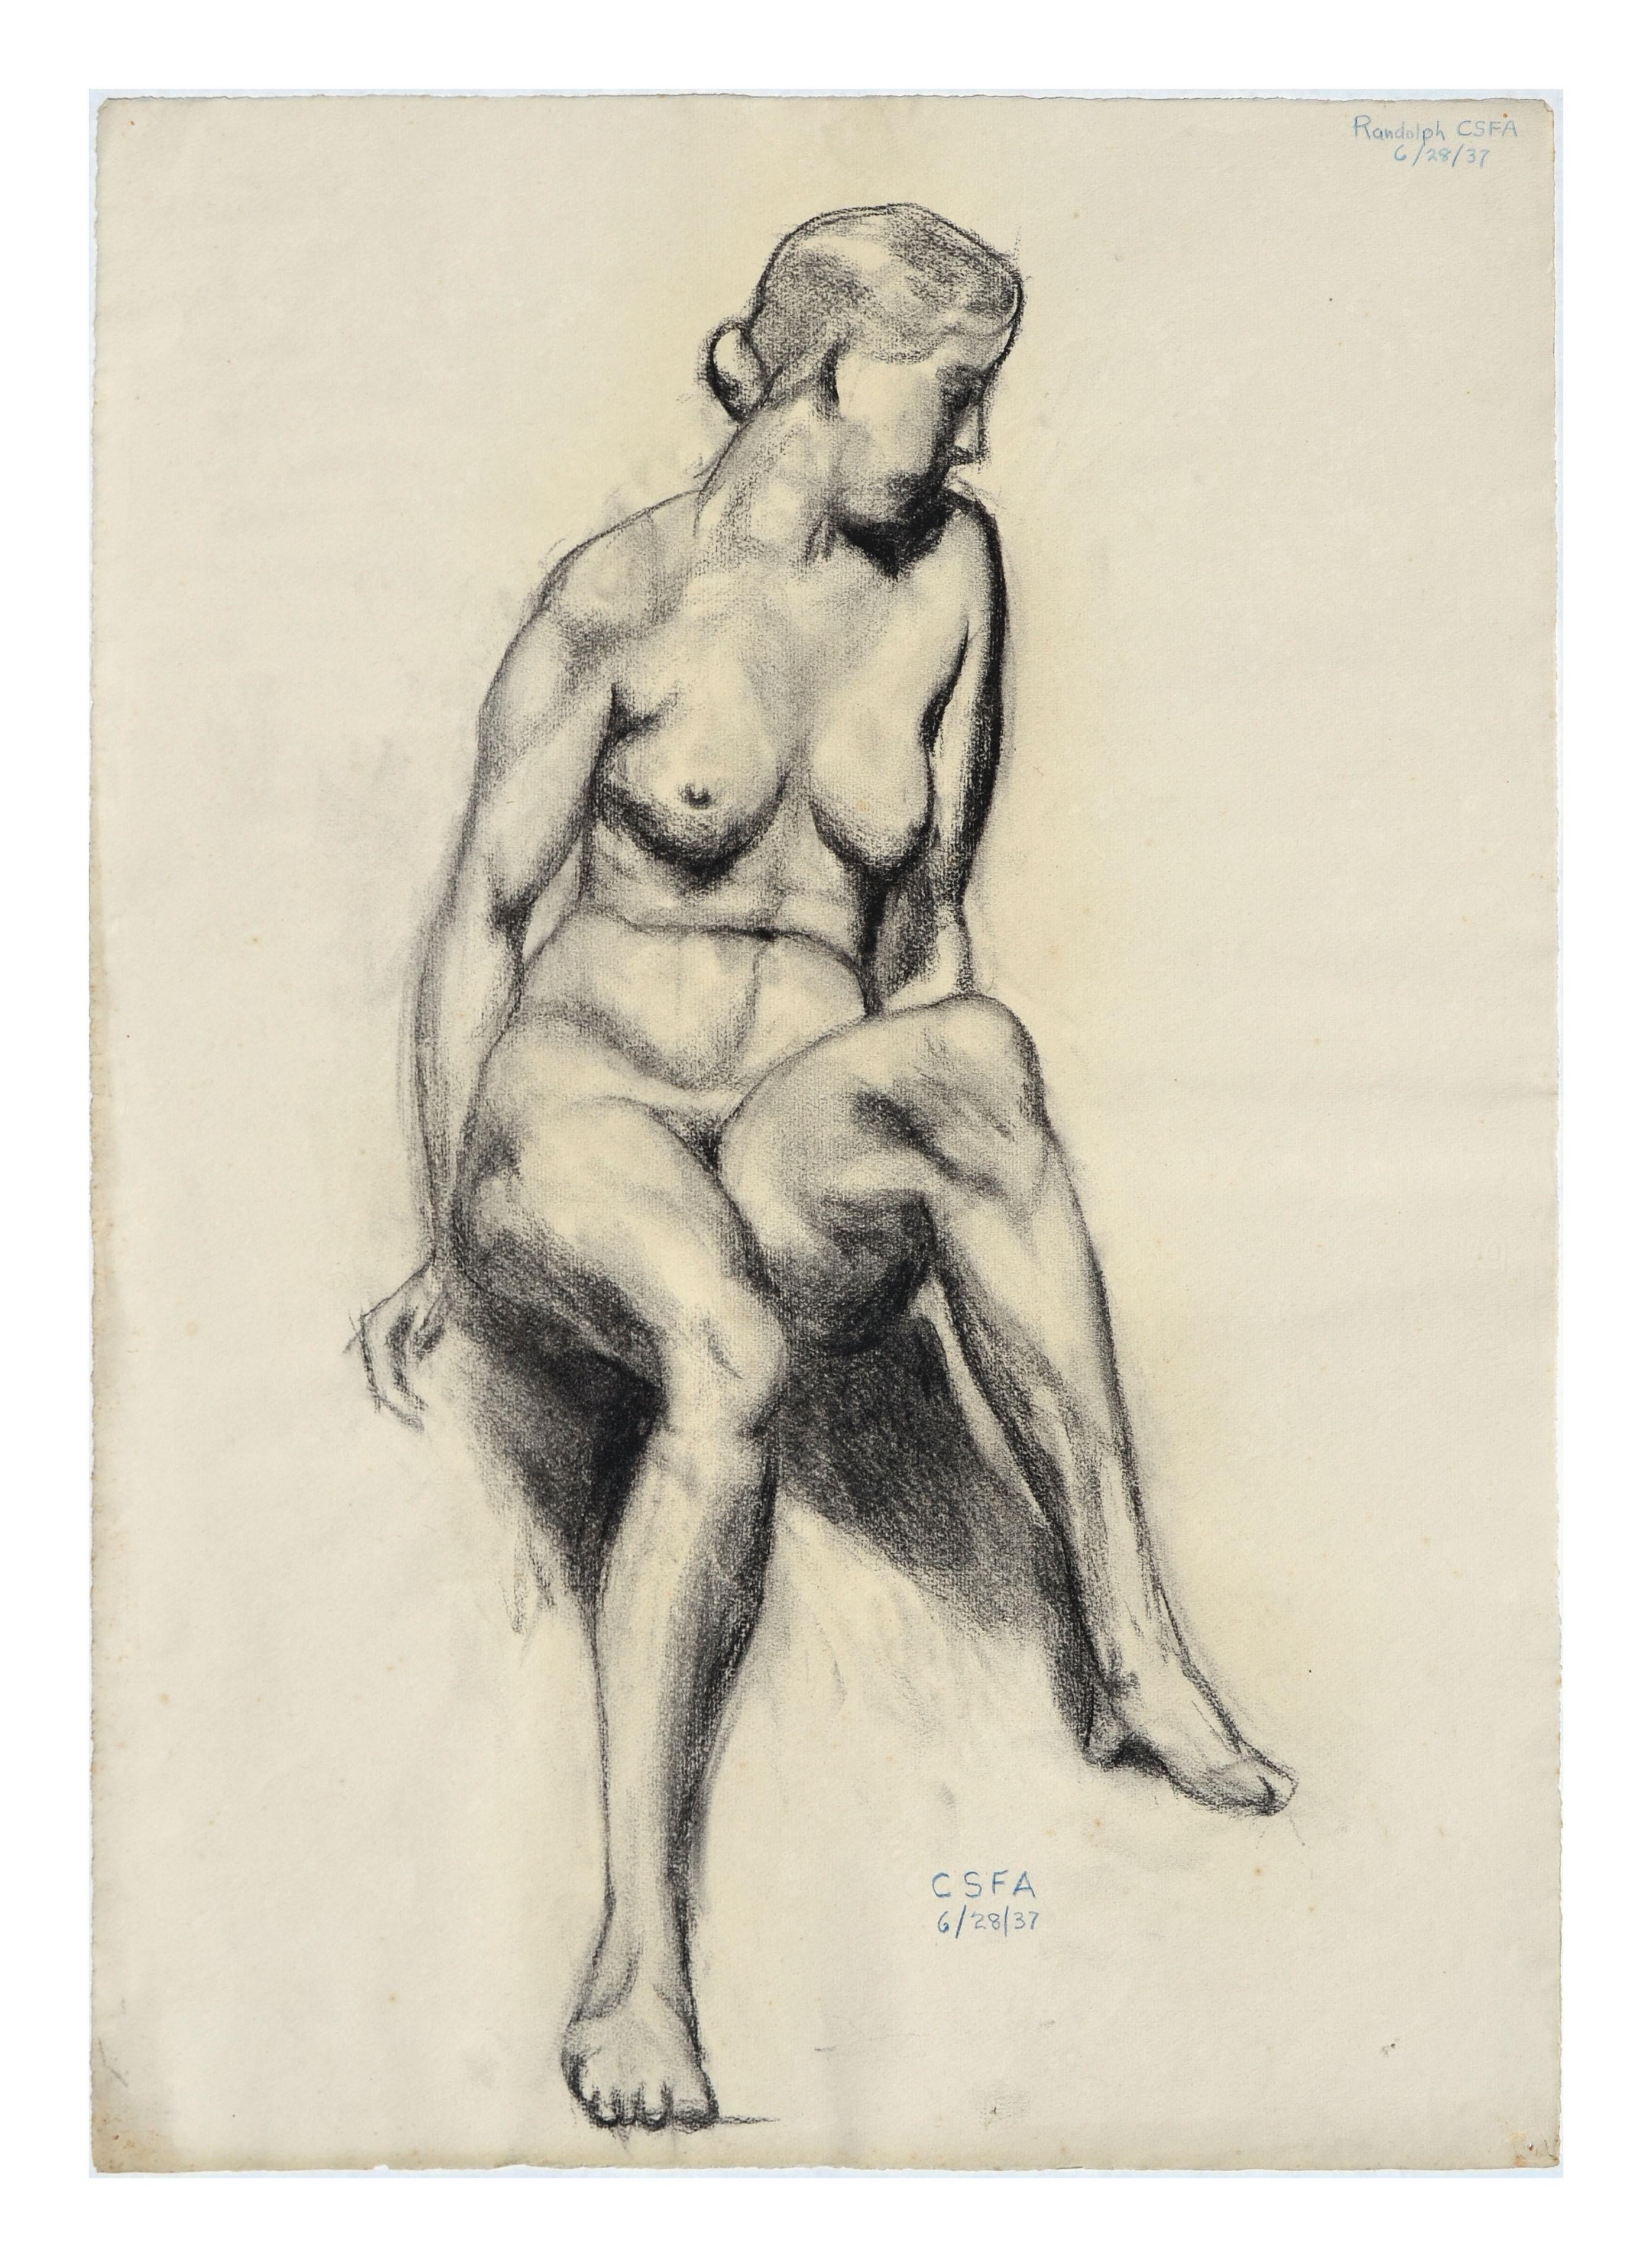 Unknown Figurative Art - 1930s Nude Figure Study 